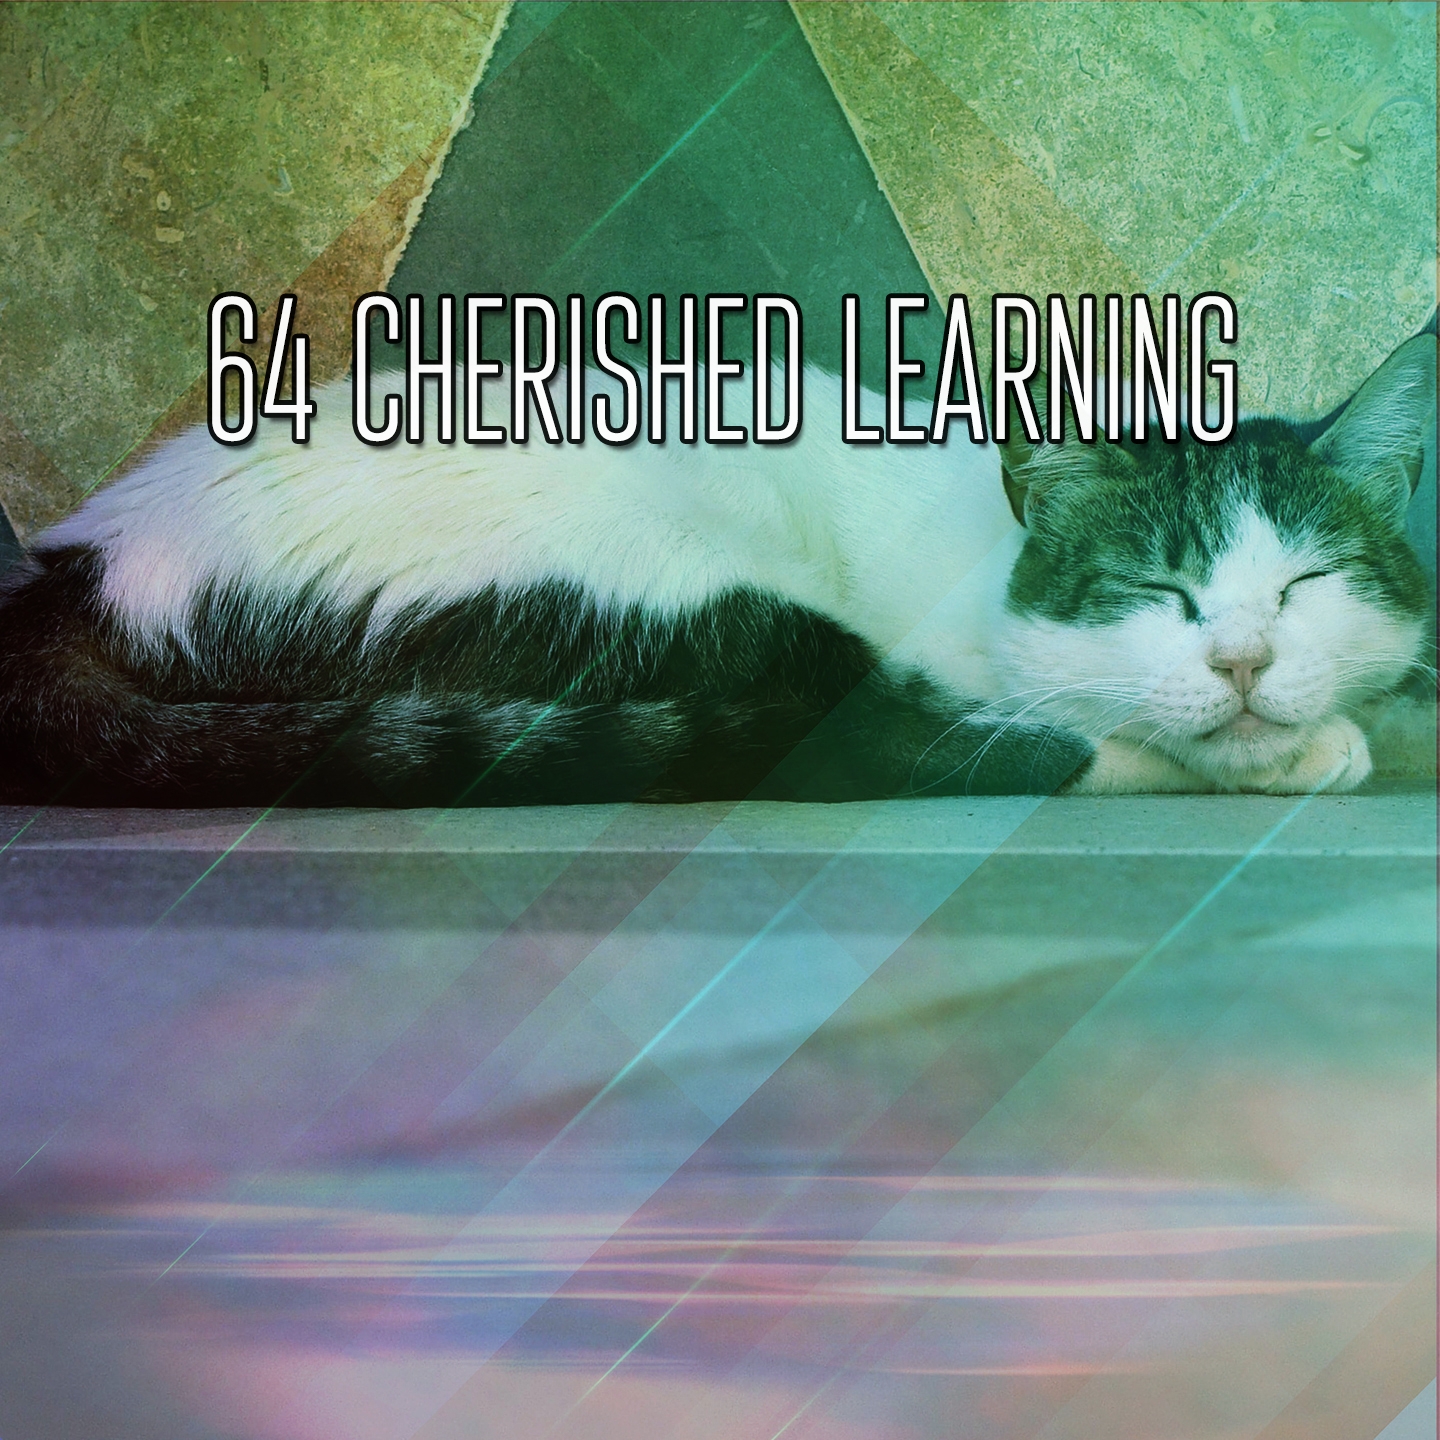 64 Cherished Learning